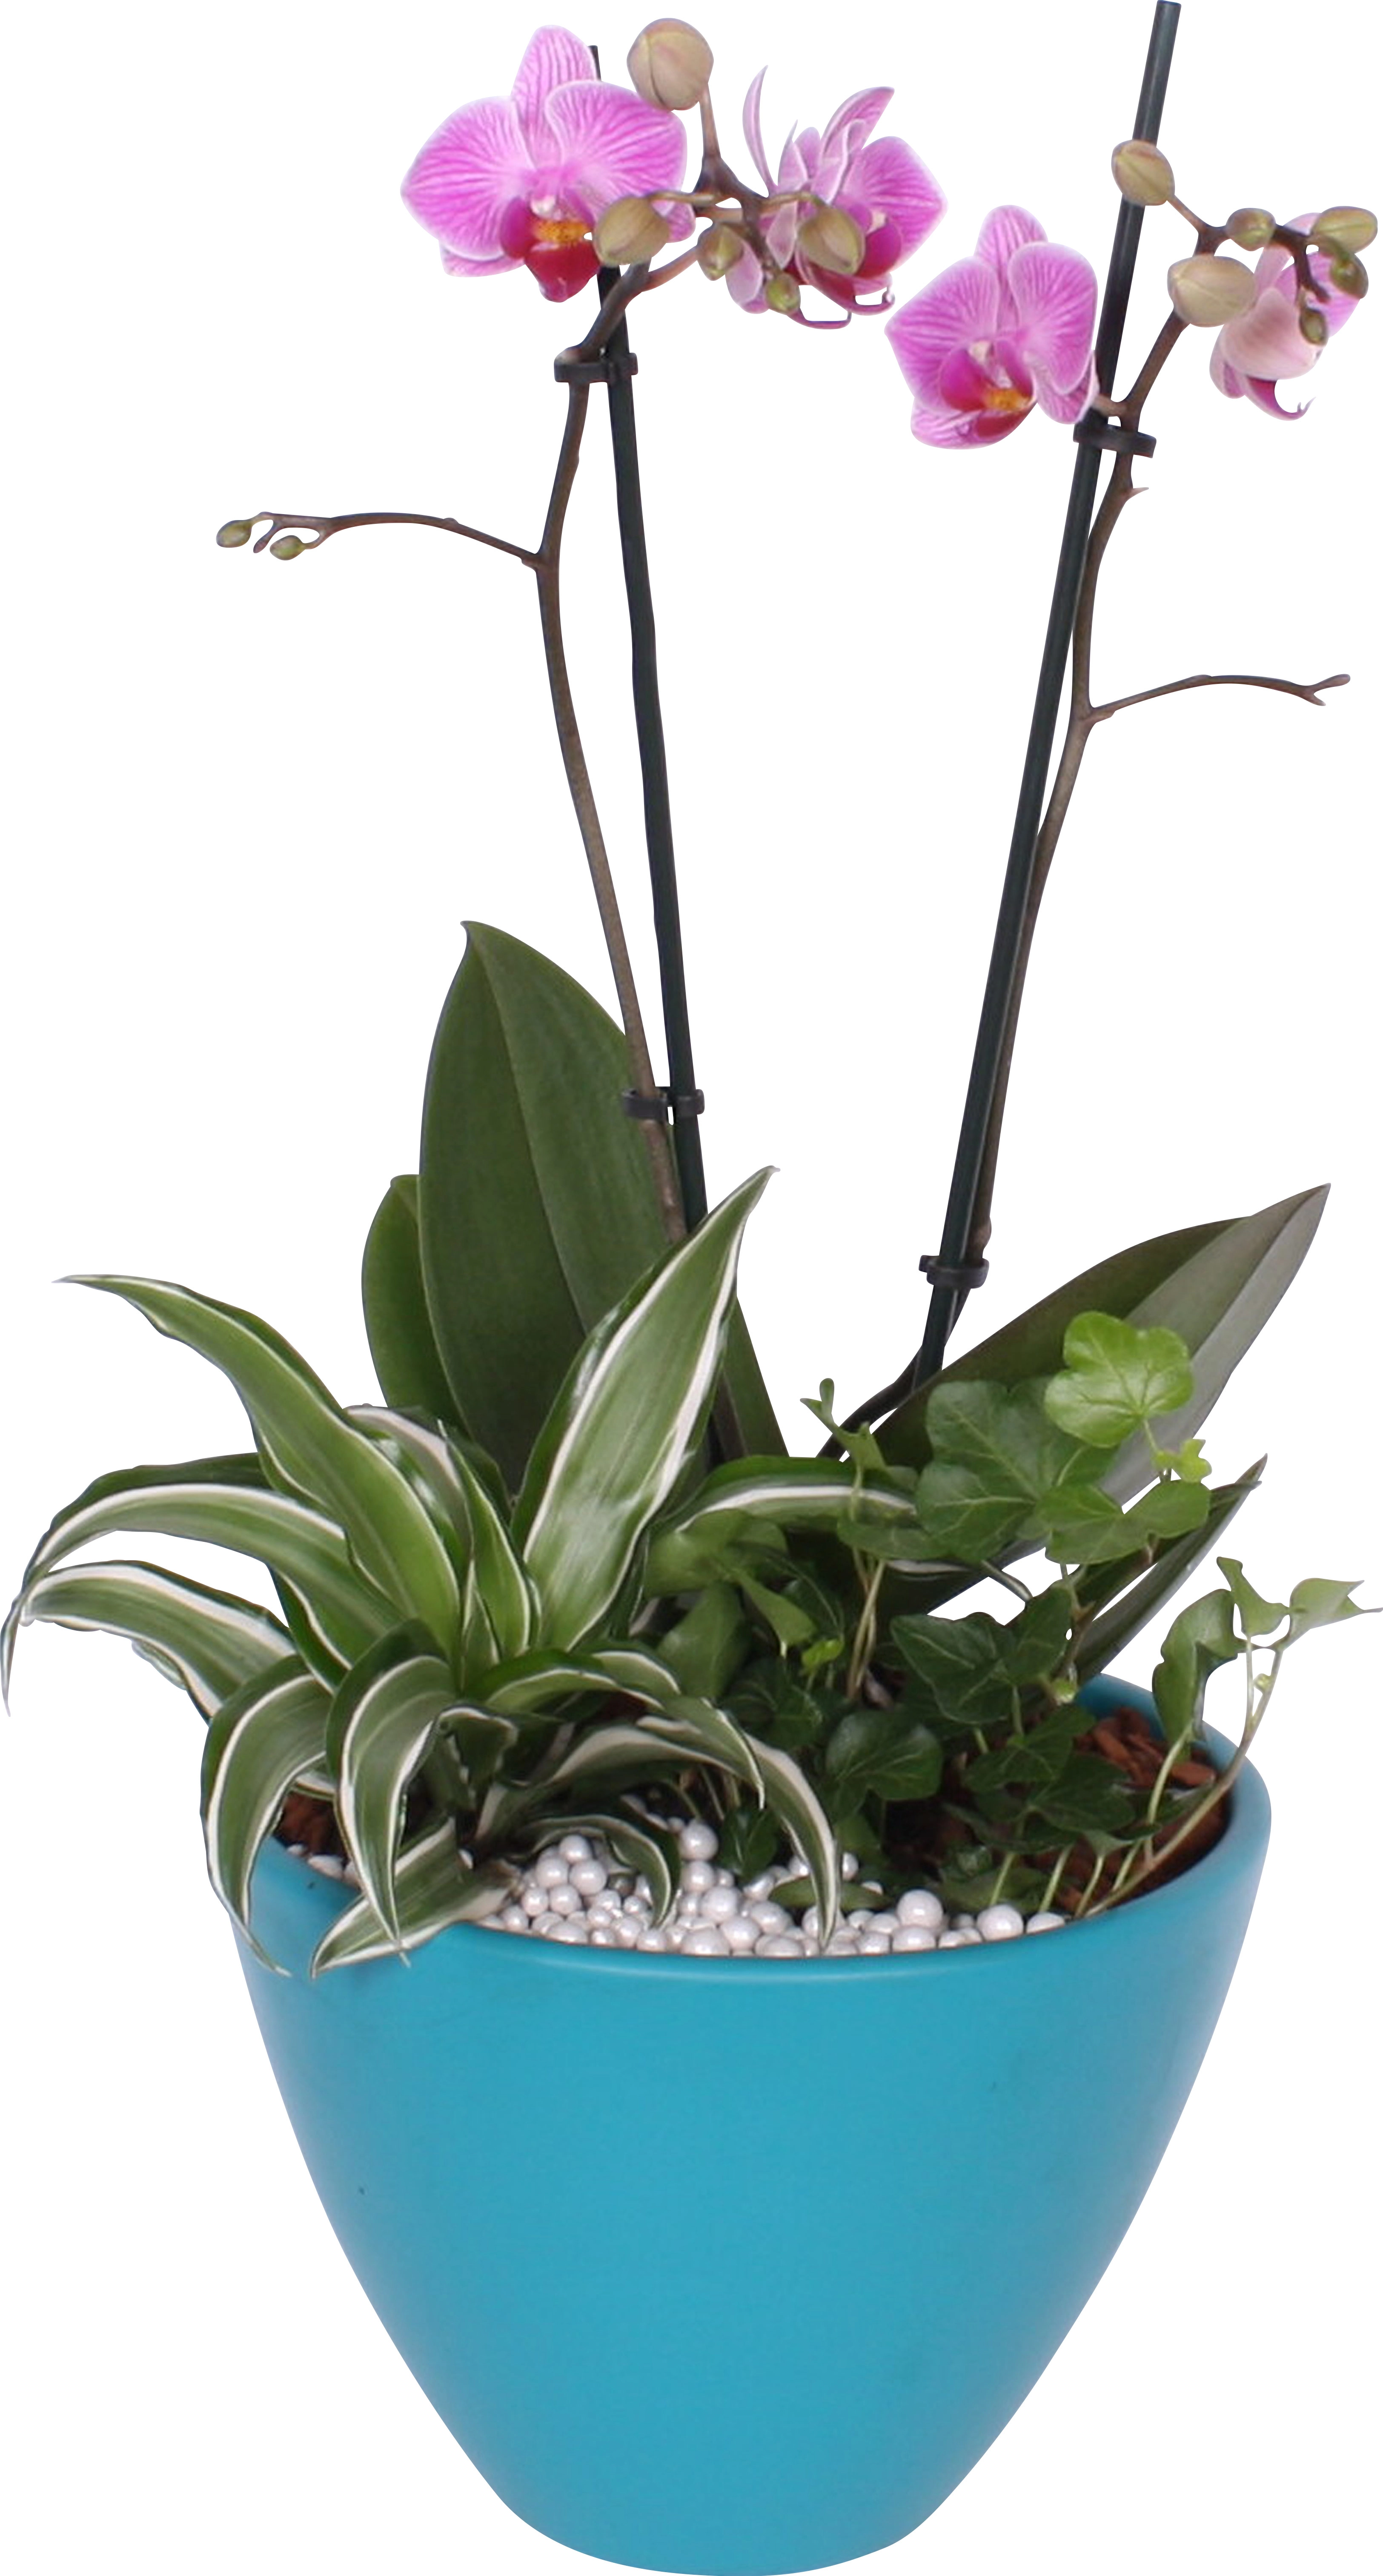 Bepflanzte Glasschale in verschiedenen Farben OBI kaufen bei mit Orchidee